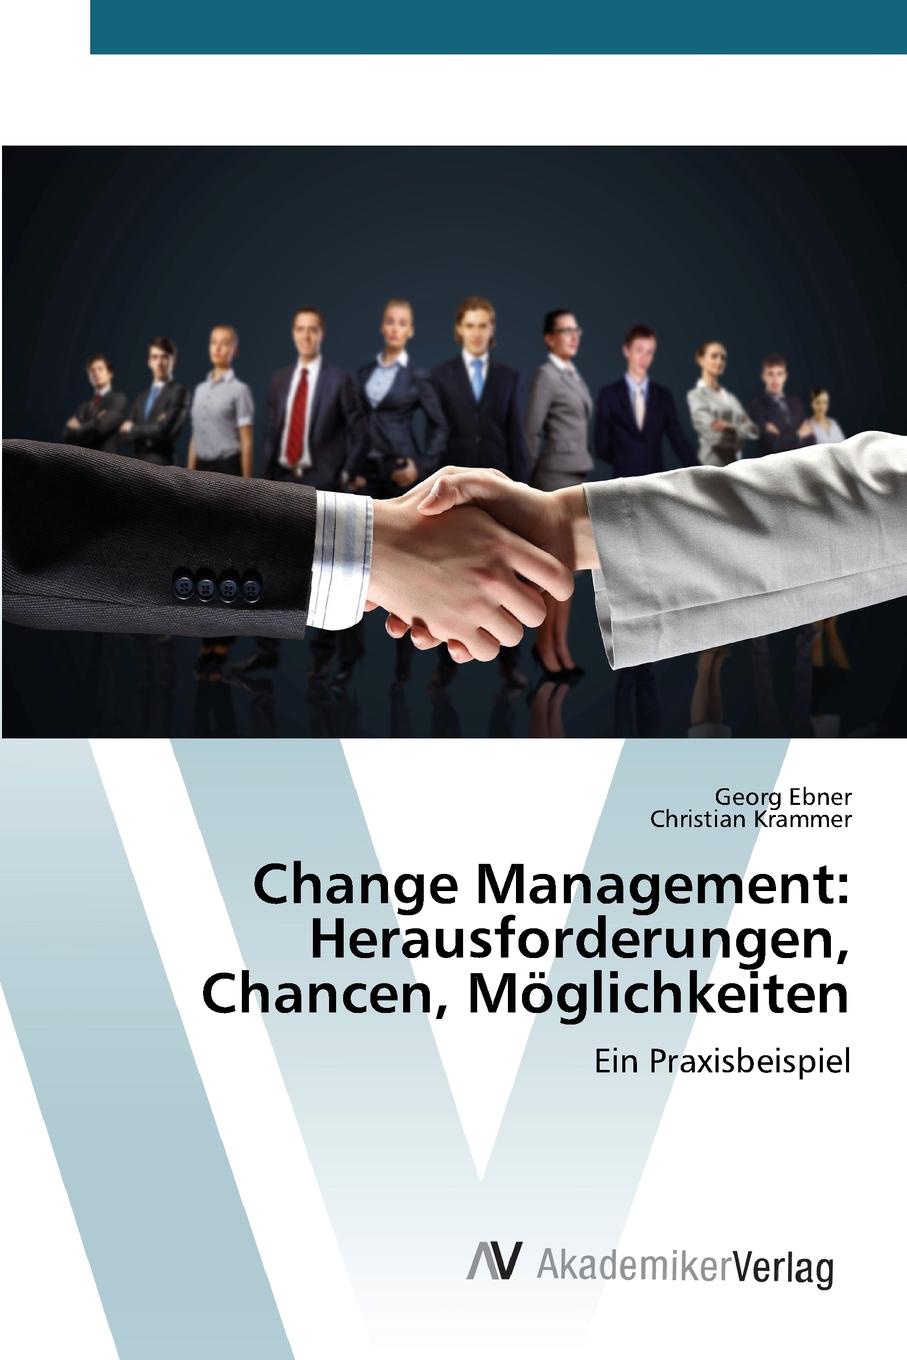 Change Management. Herausforderungen, Chancen, Moglichkeiten